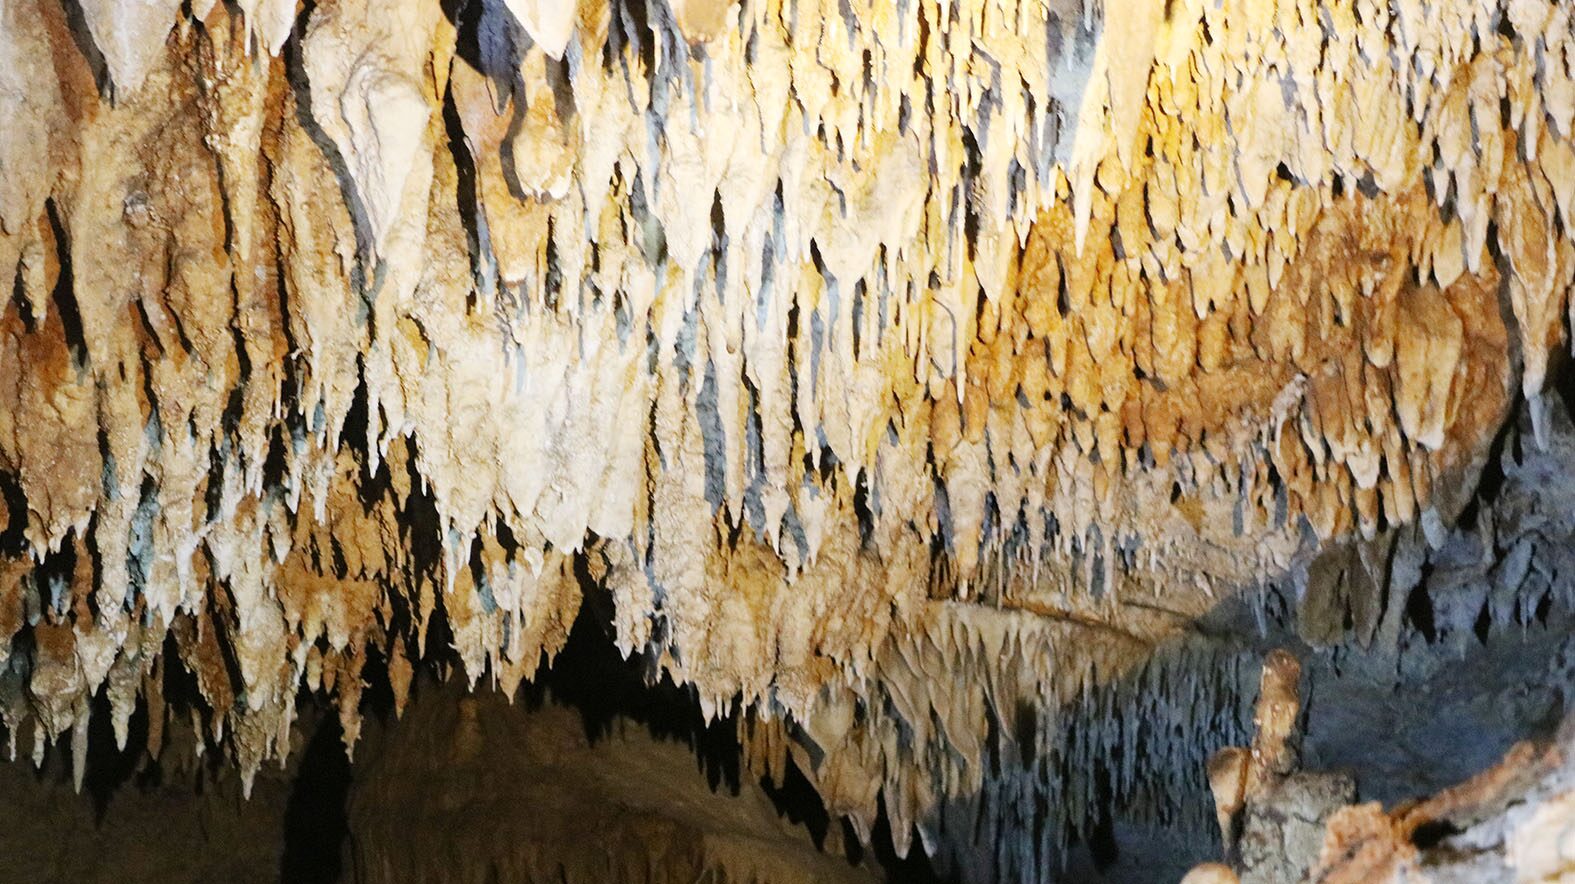 ราชบุรี เจอถ้ำแห่งใหม่ รูเข้านิดเดียว แต่ข้างใน หินงอกหินย้อยงดงามมาก